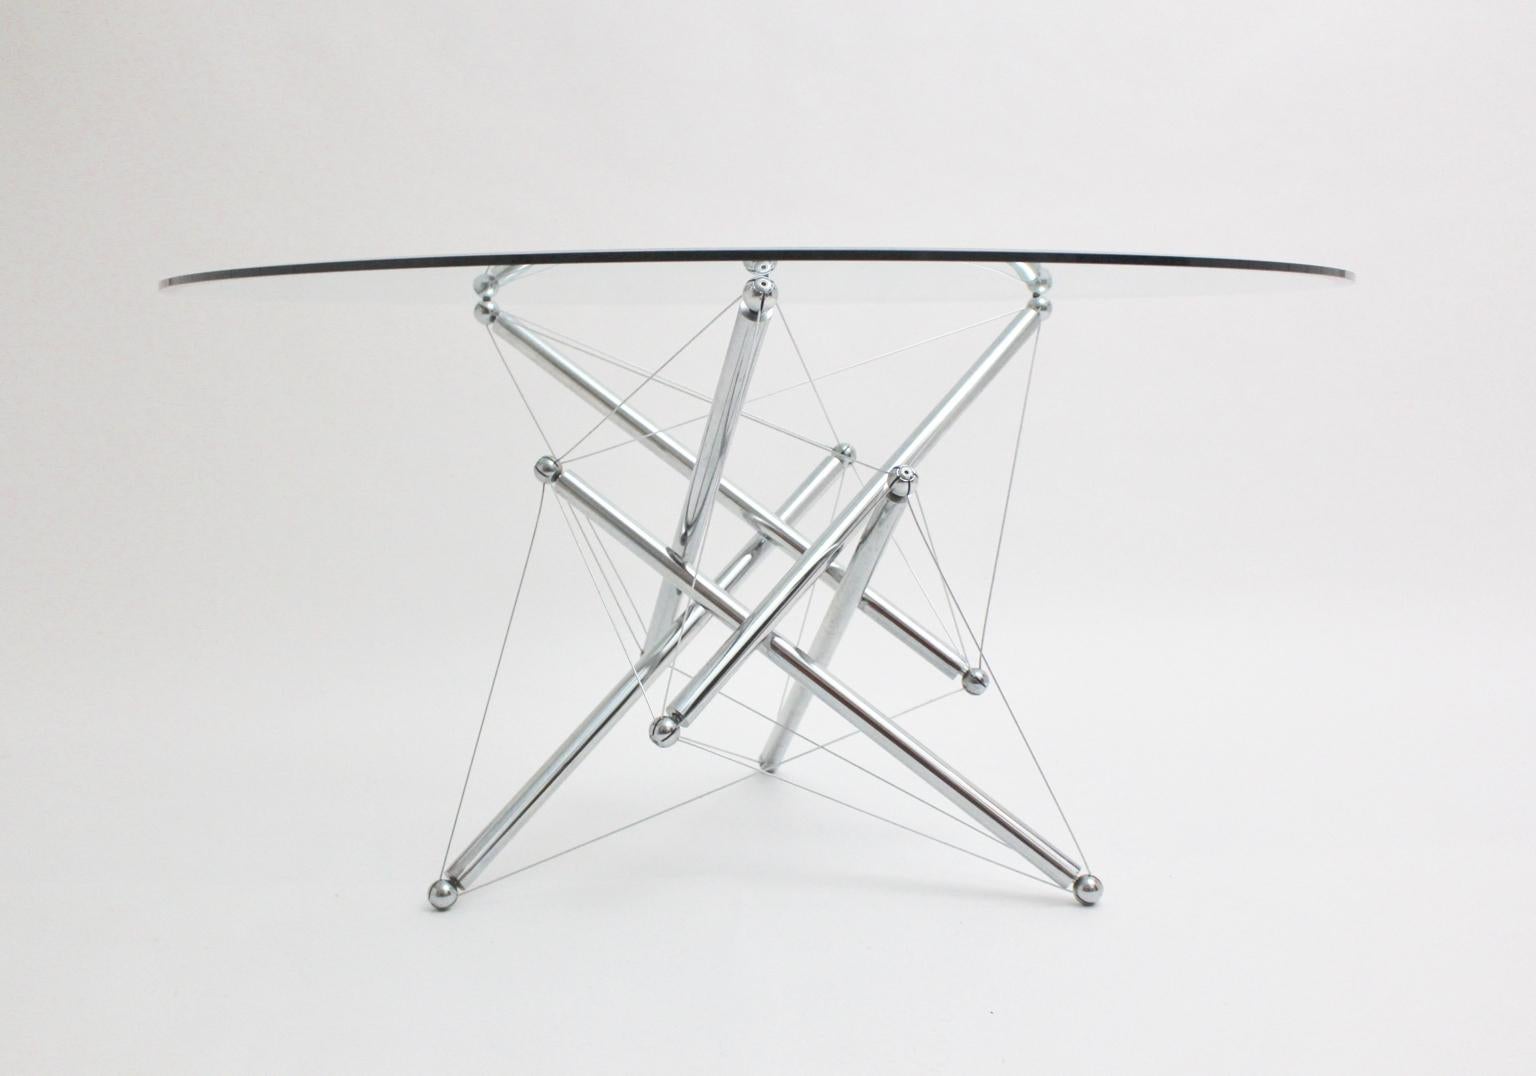 Moderner Vintage-Esstisch aus verchromtem Stahlgestell und einer Klarglasplatte im Stil von Theodore Waddell, 1980er Jahre.
Dieser Esstisch besteht aus einem polierten, verchromten Stahlgestell und einer klaren Glasplatte. Die Glasplatte besteht aus